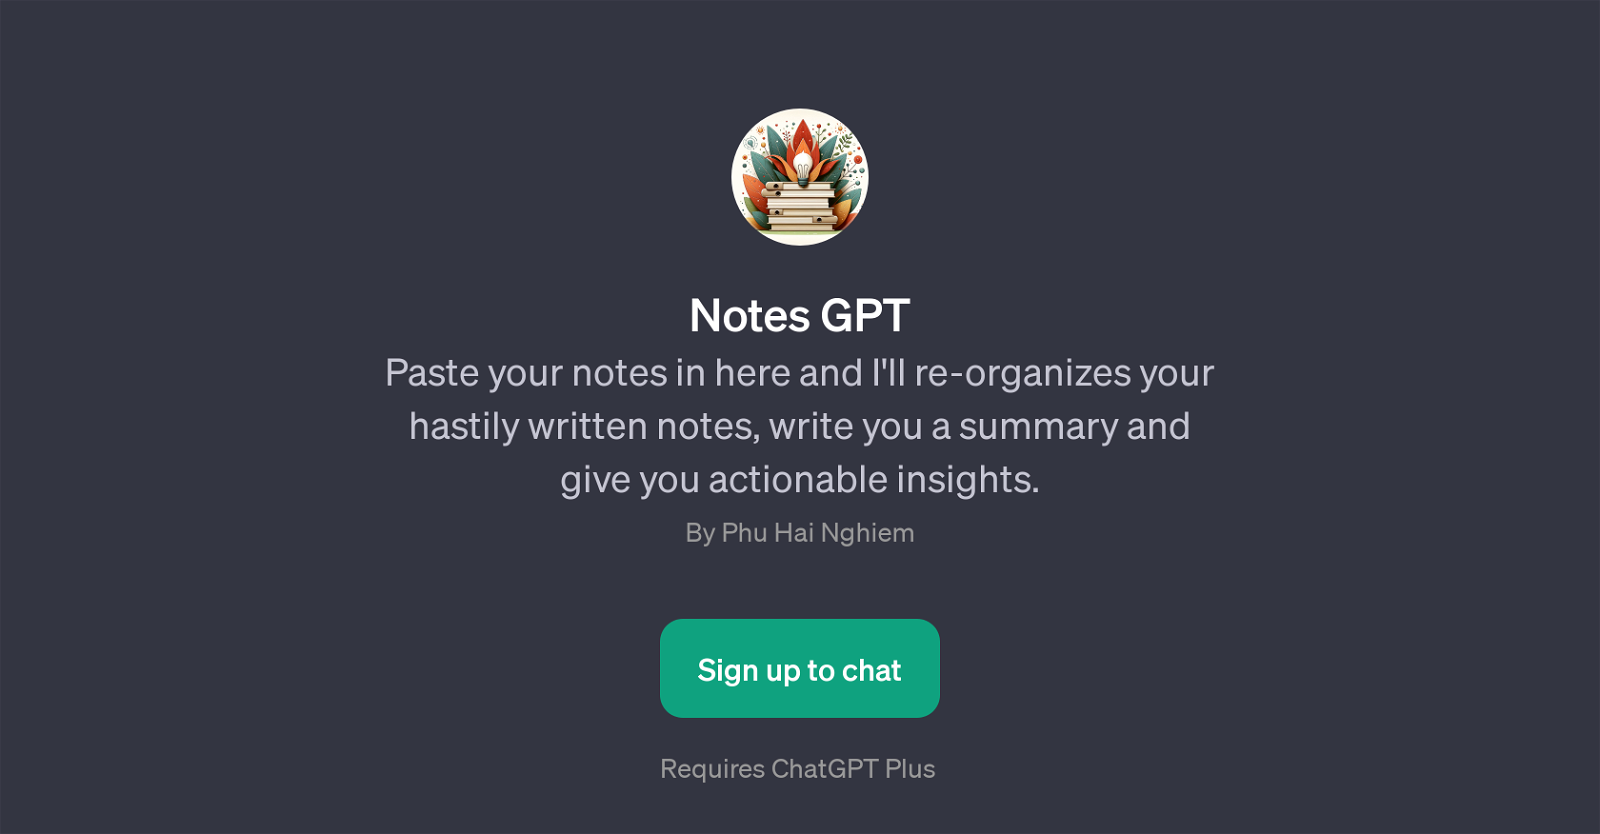 Notes GPT website